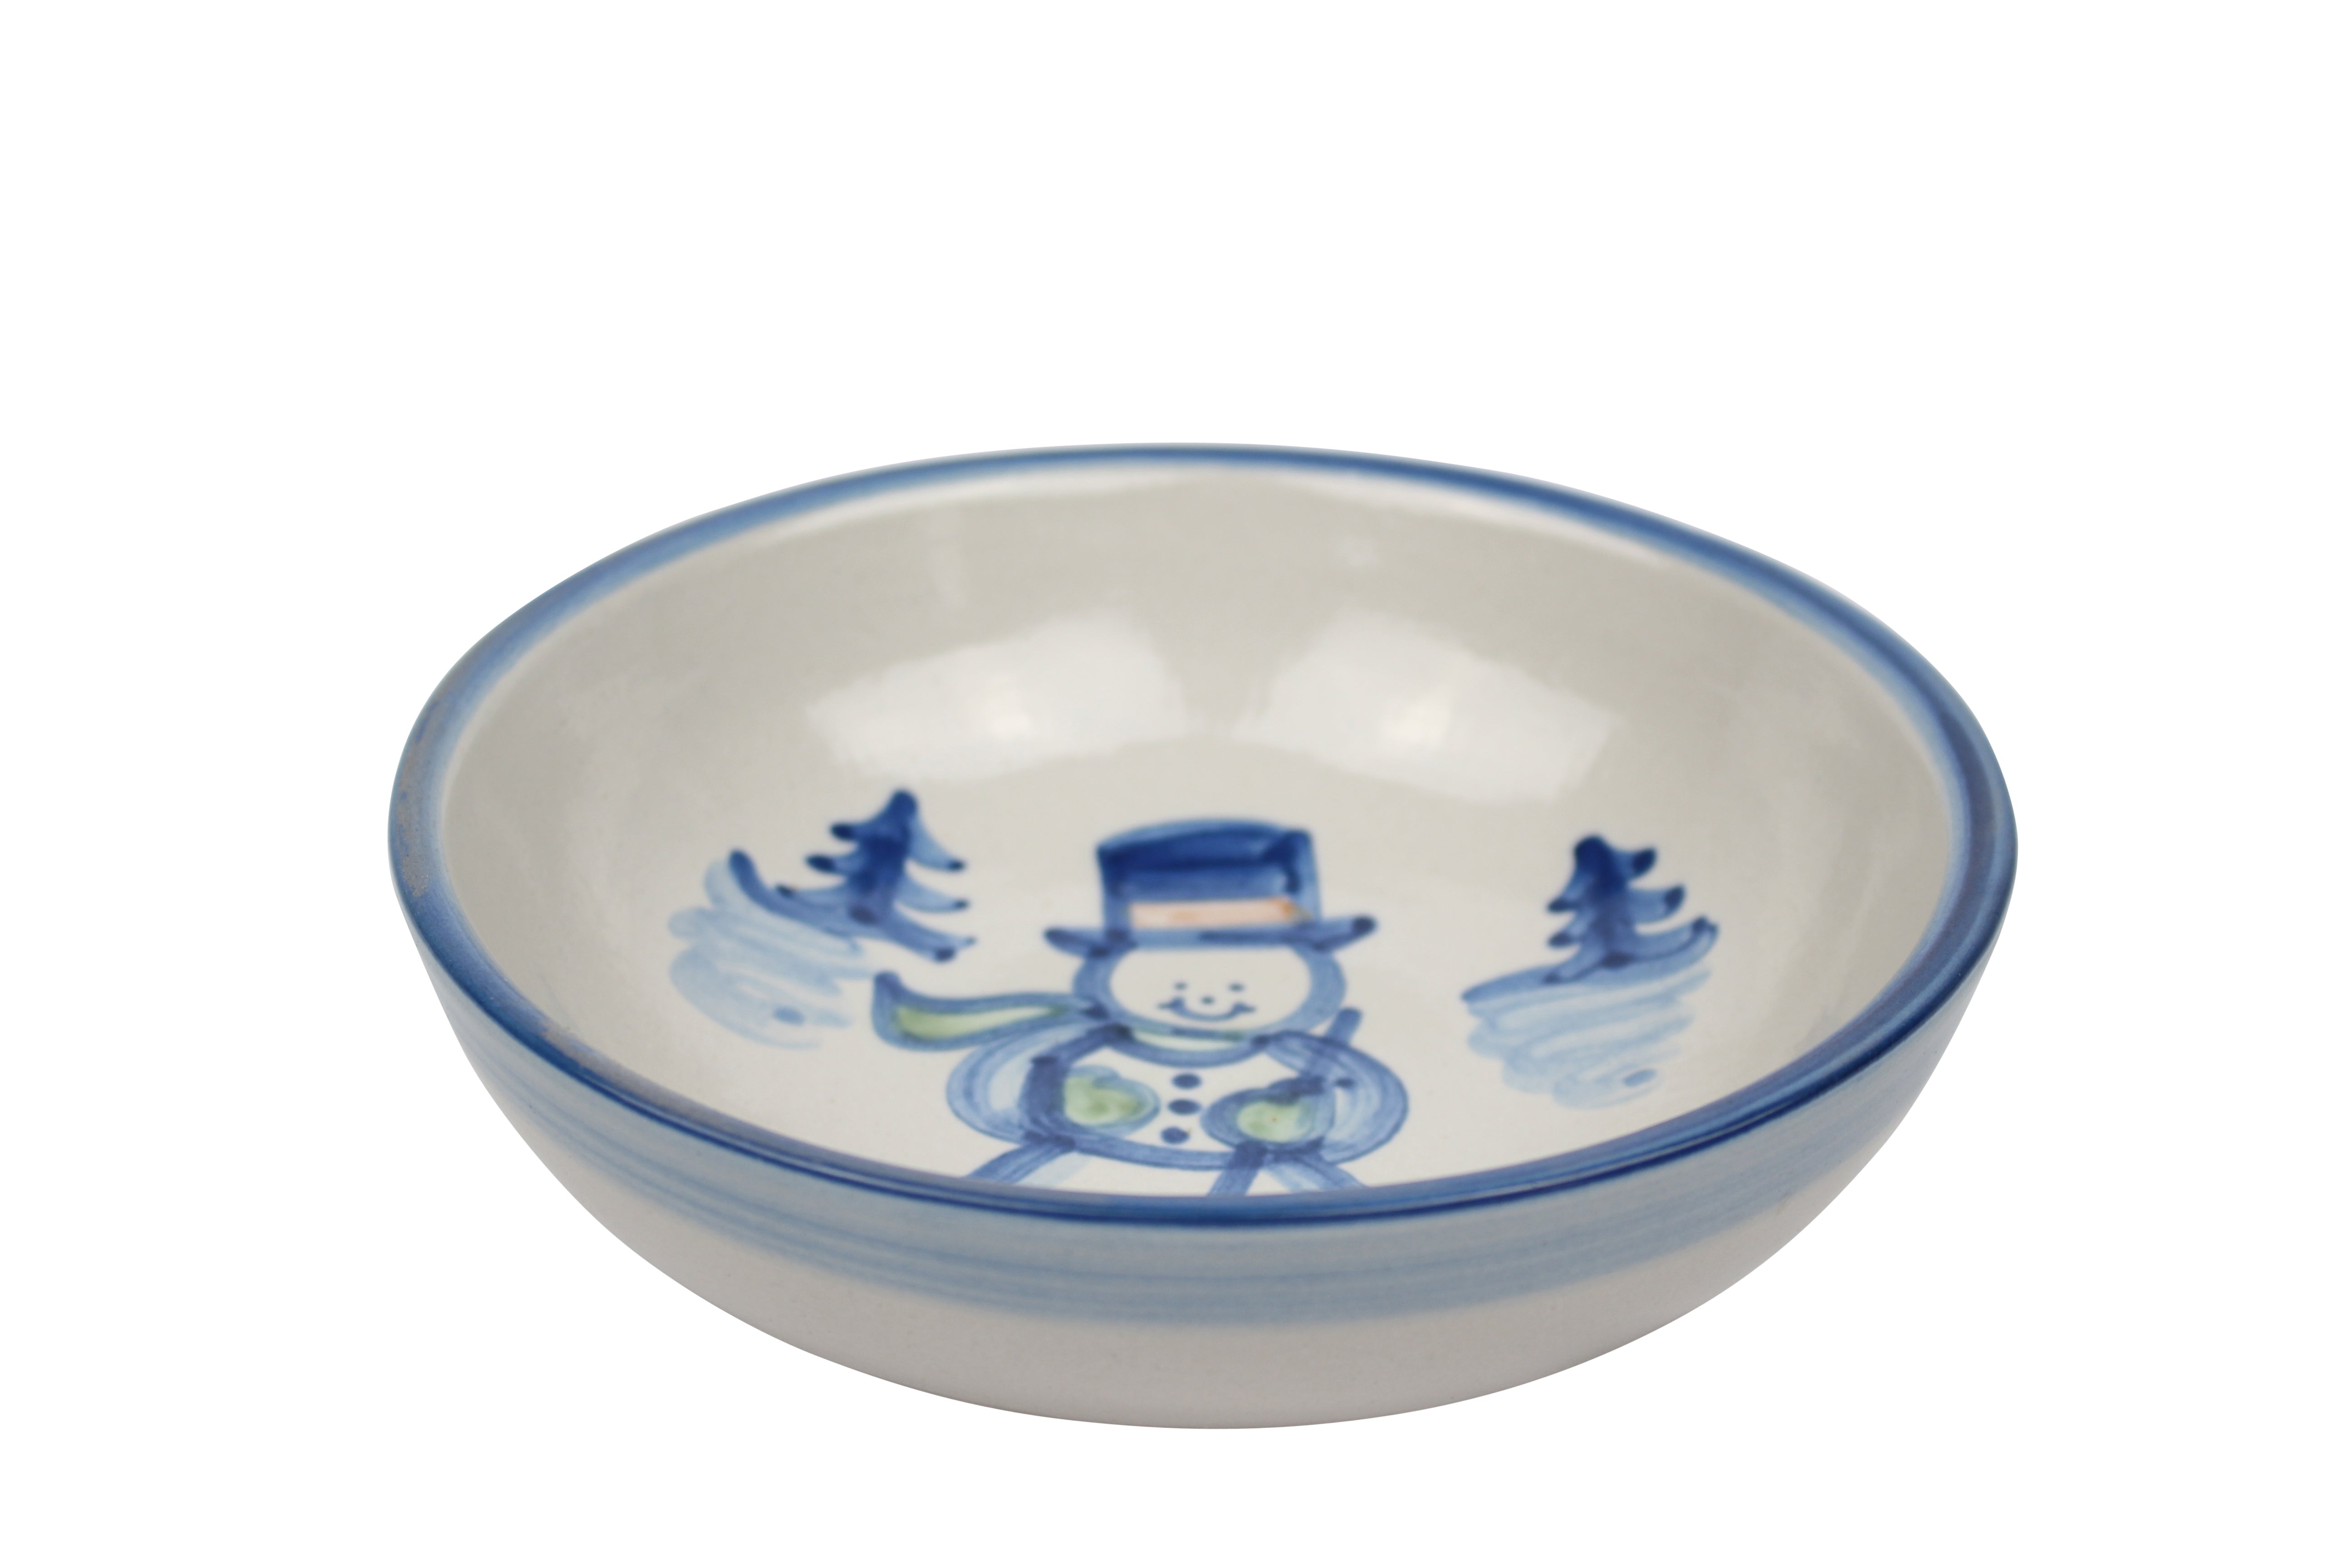 7" Regular Bowls - Snowman